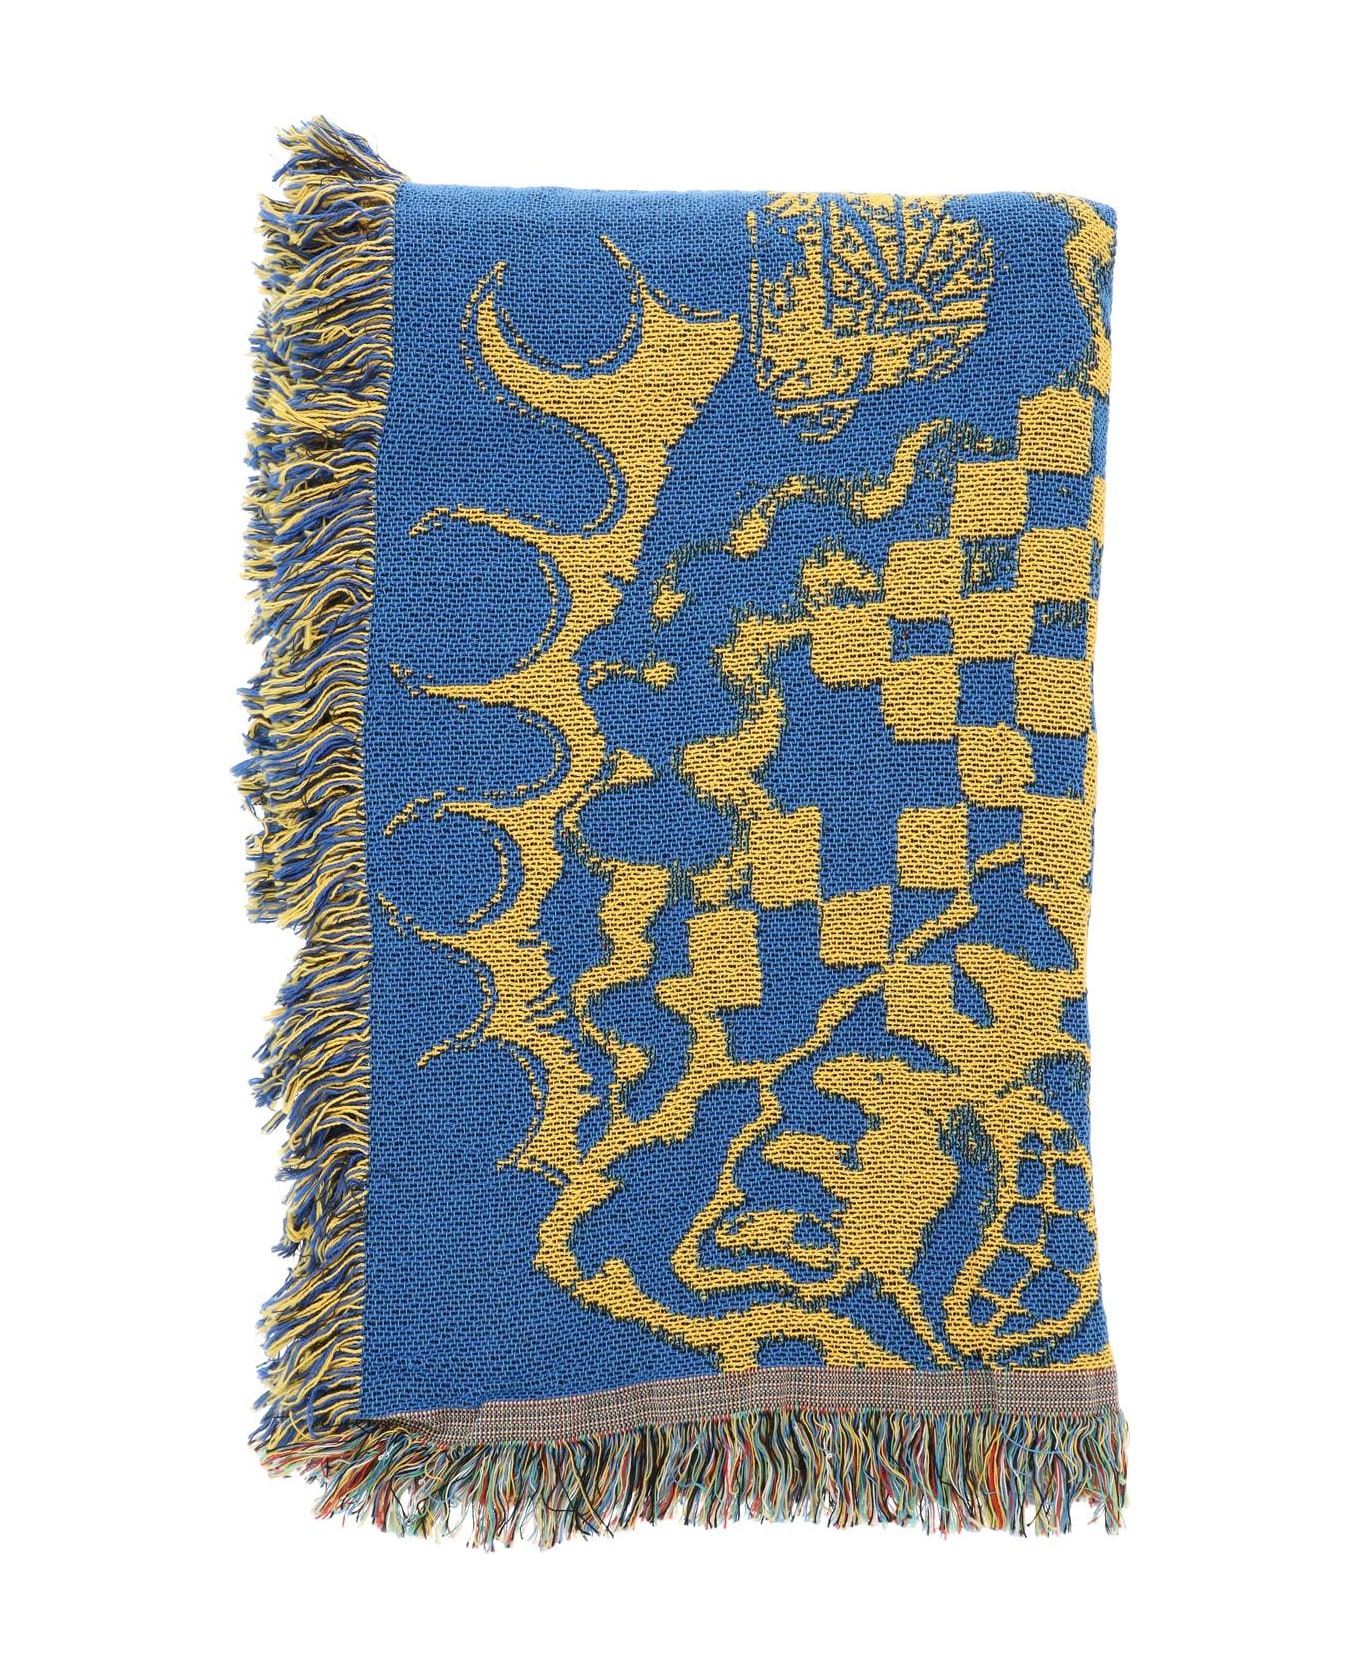 PACCBET Logoed Wool Blanket - BLUE 1 (Blue)